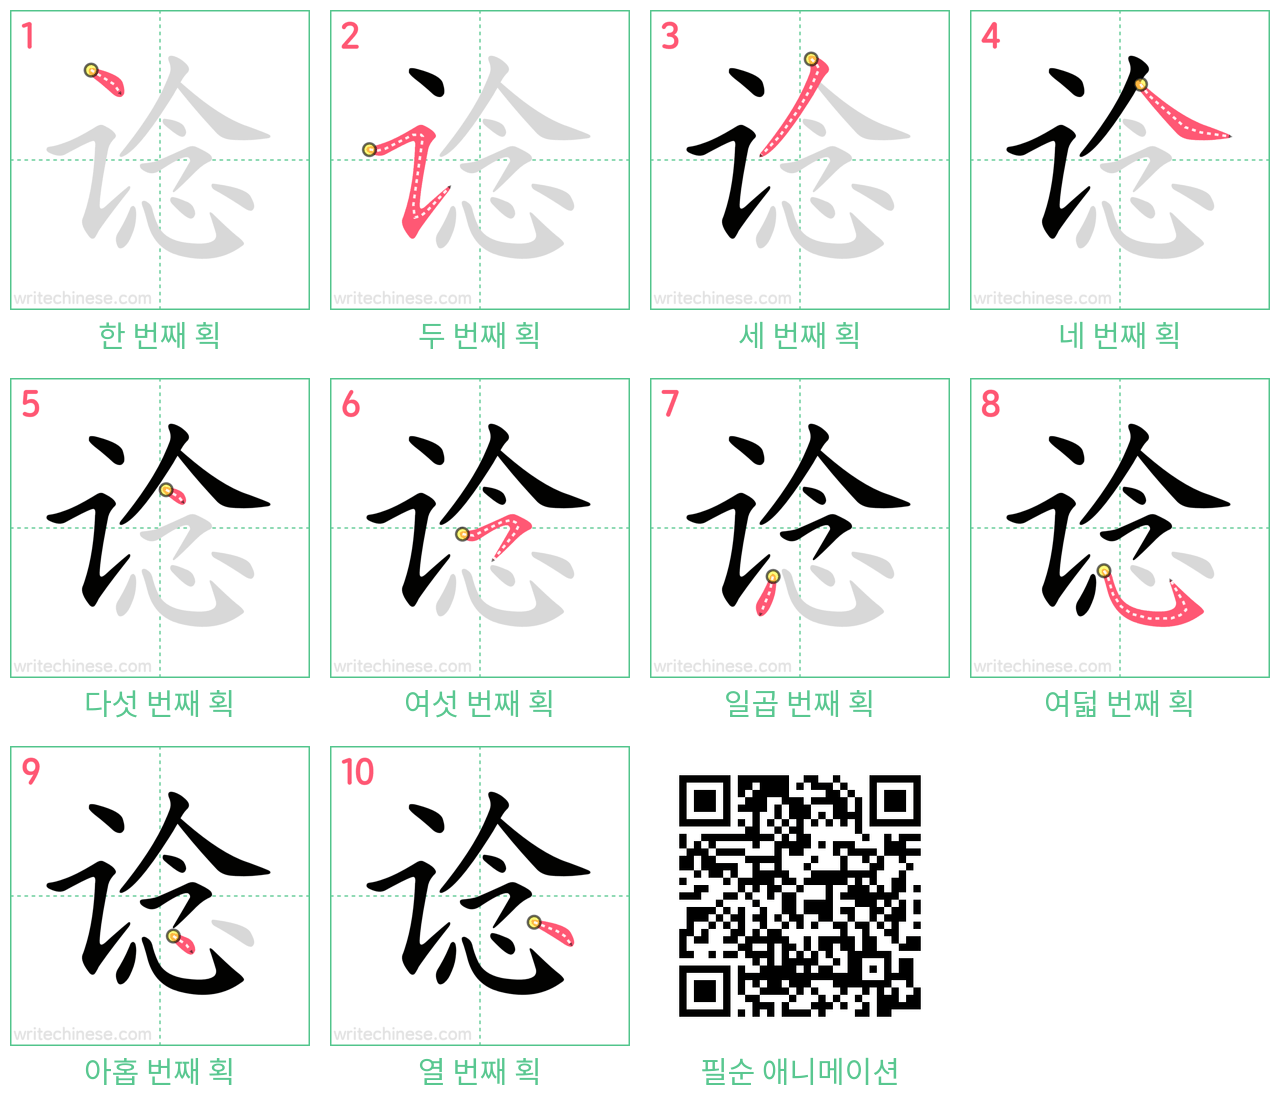 谂 step-by-step stroke order diagrams